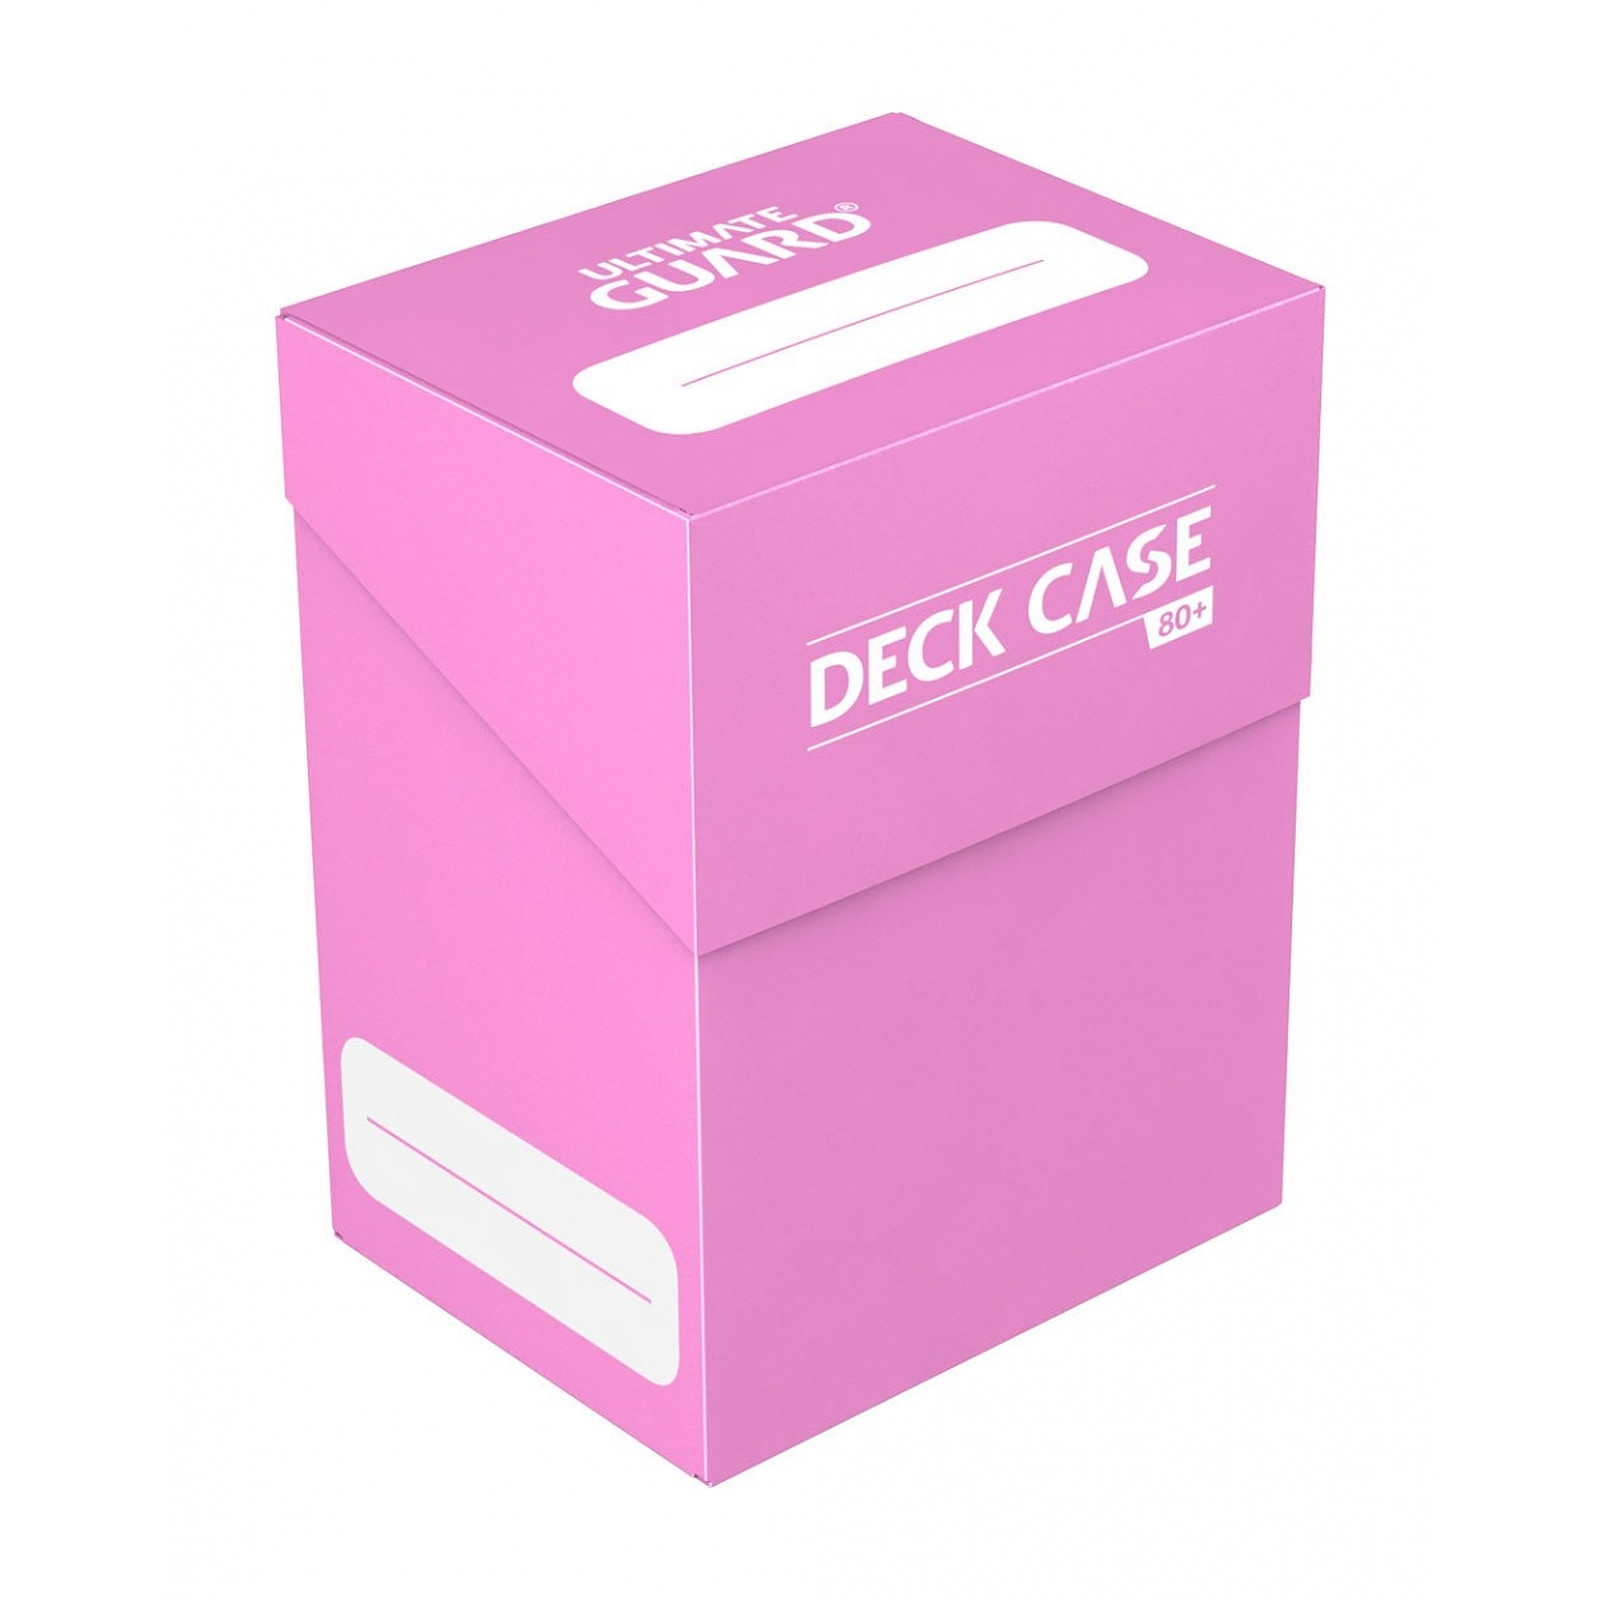 Ultimate Guard - Boite pour cartes Deck Case 80+ taille standard Rose - Accessoire jeux Ultimate Guard